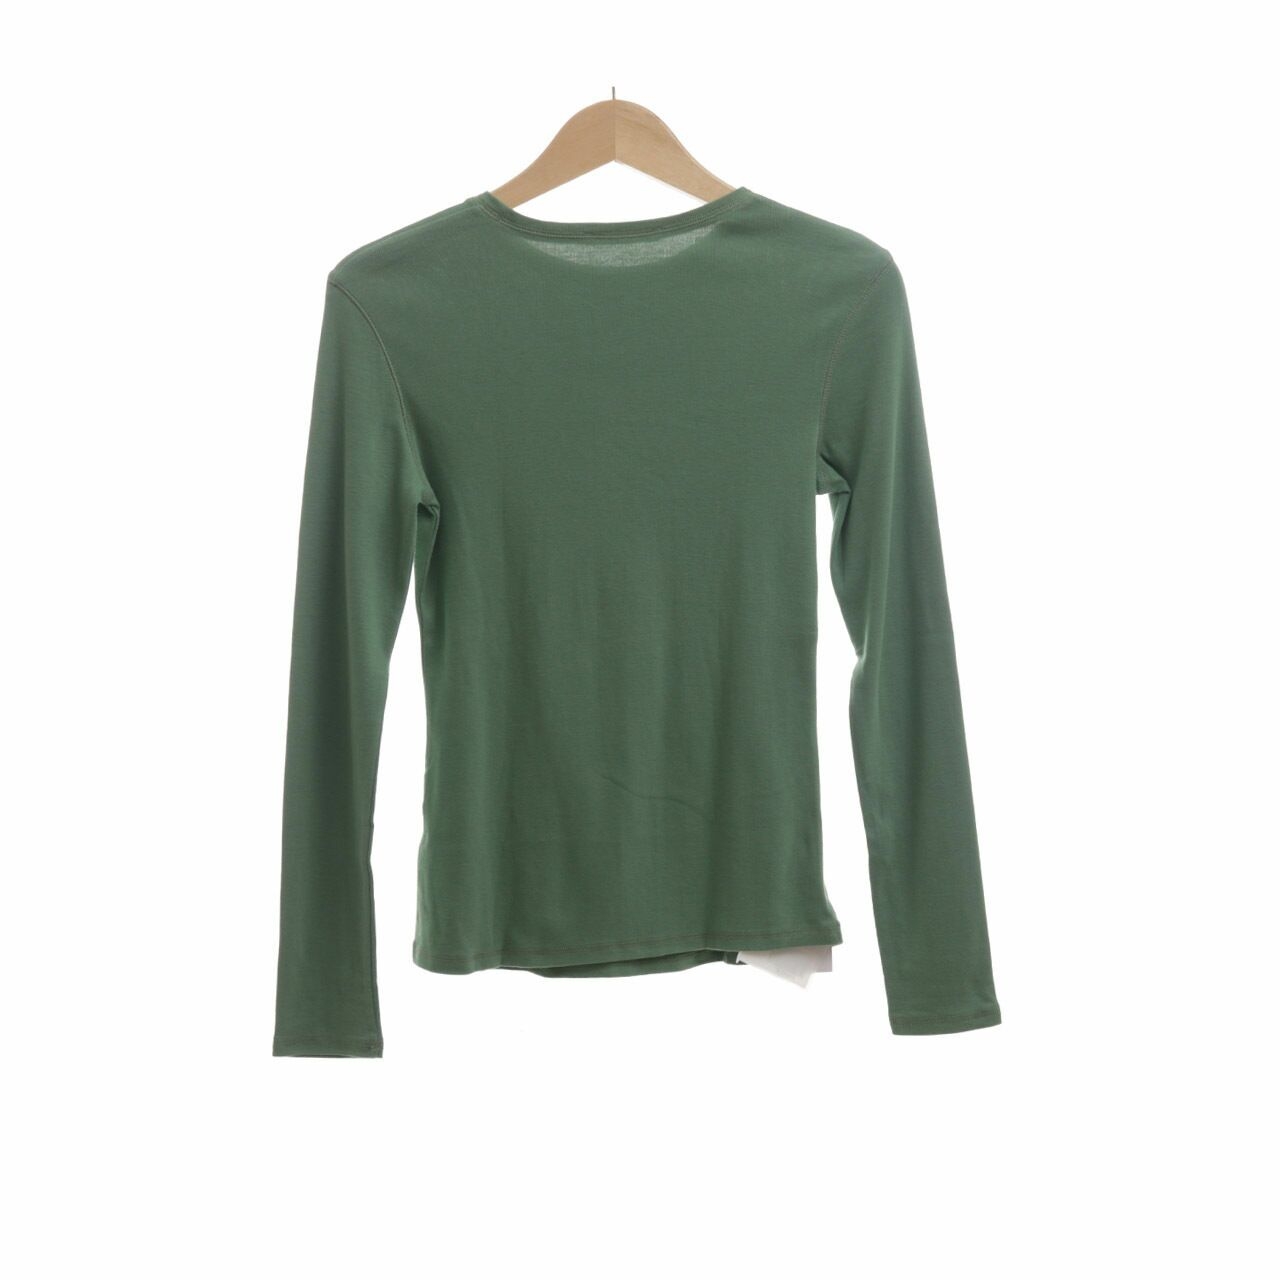 Marks & Spencer Green Long Sleevee T-shirt